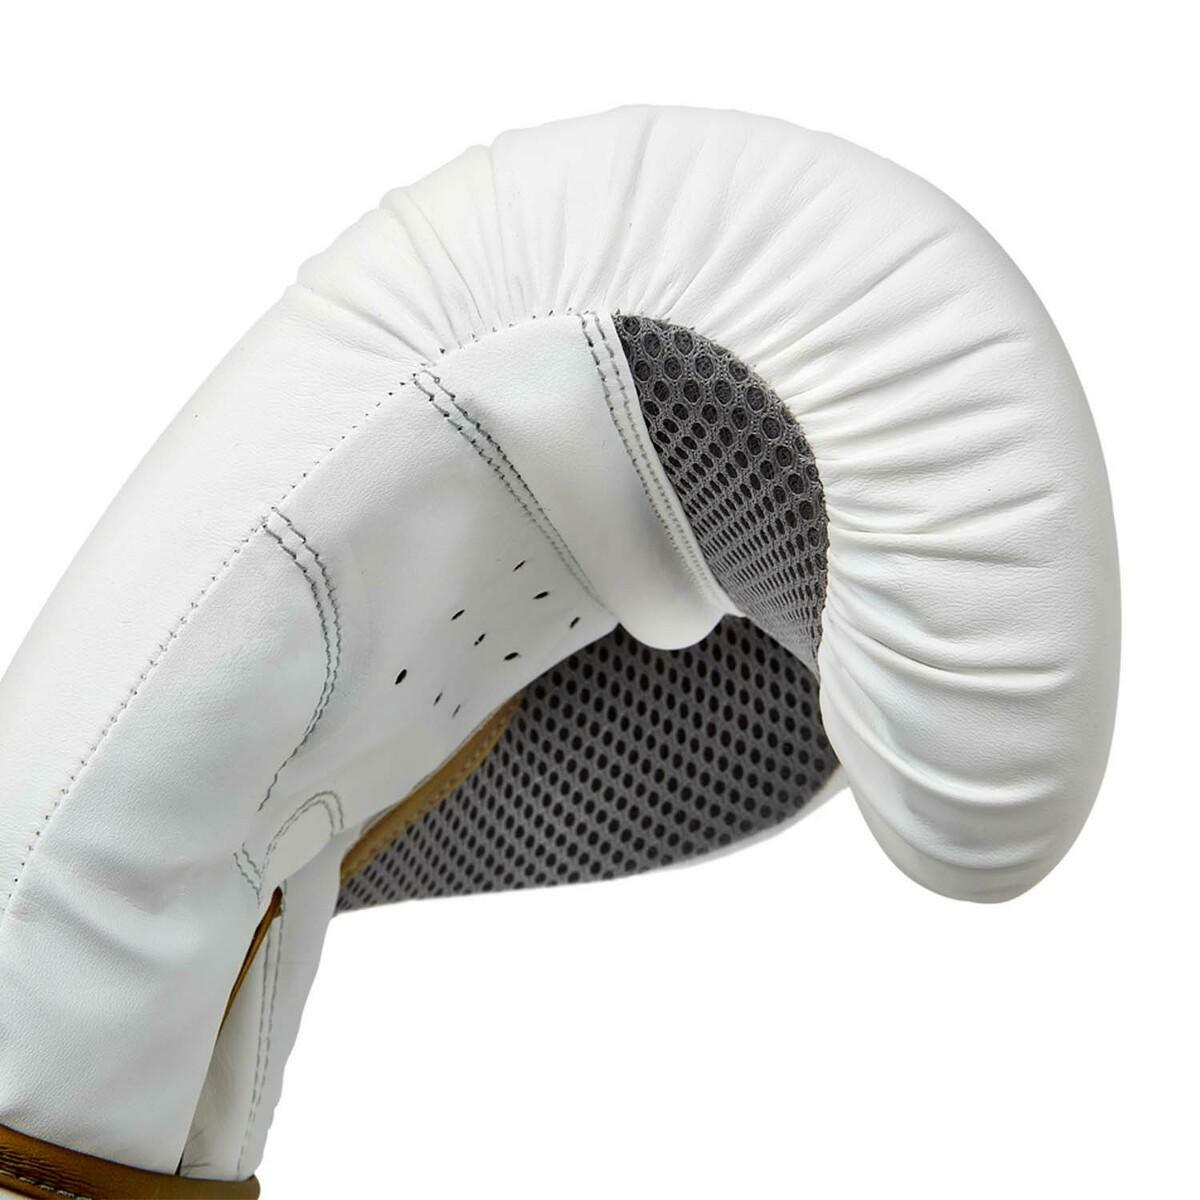 Reebok Boxing Gloves White/Gold RSCB-12010GD